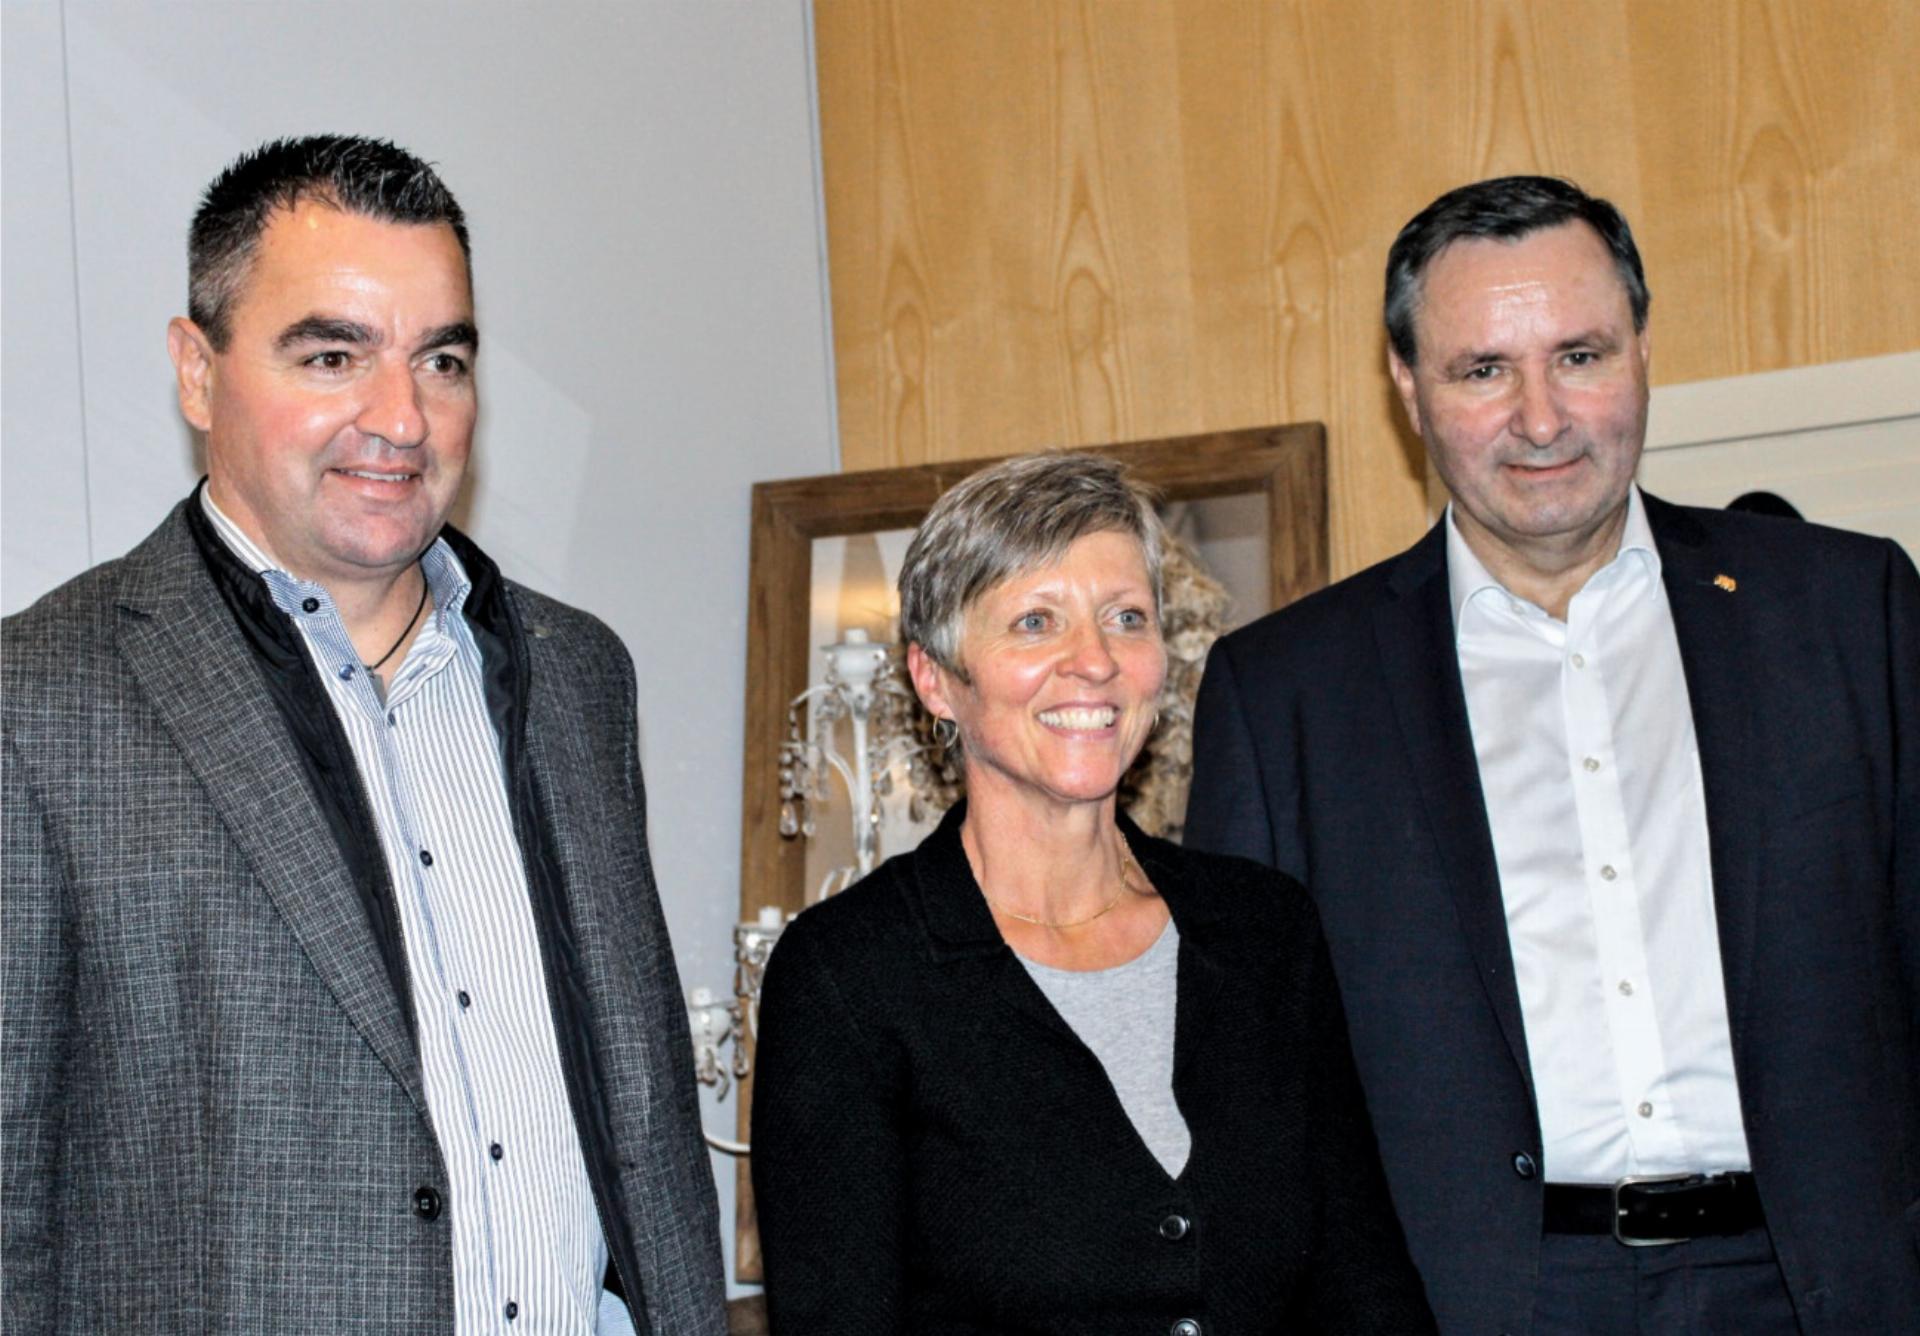 Organisatorin Katharina Allenbach aus Frutigen, flankiert von Thomas Knutti (l.) und Werner Salzmann. BILD: PETER ROTHACHER